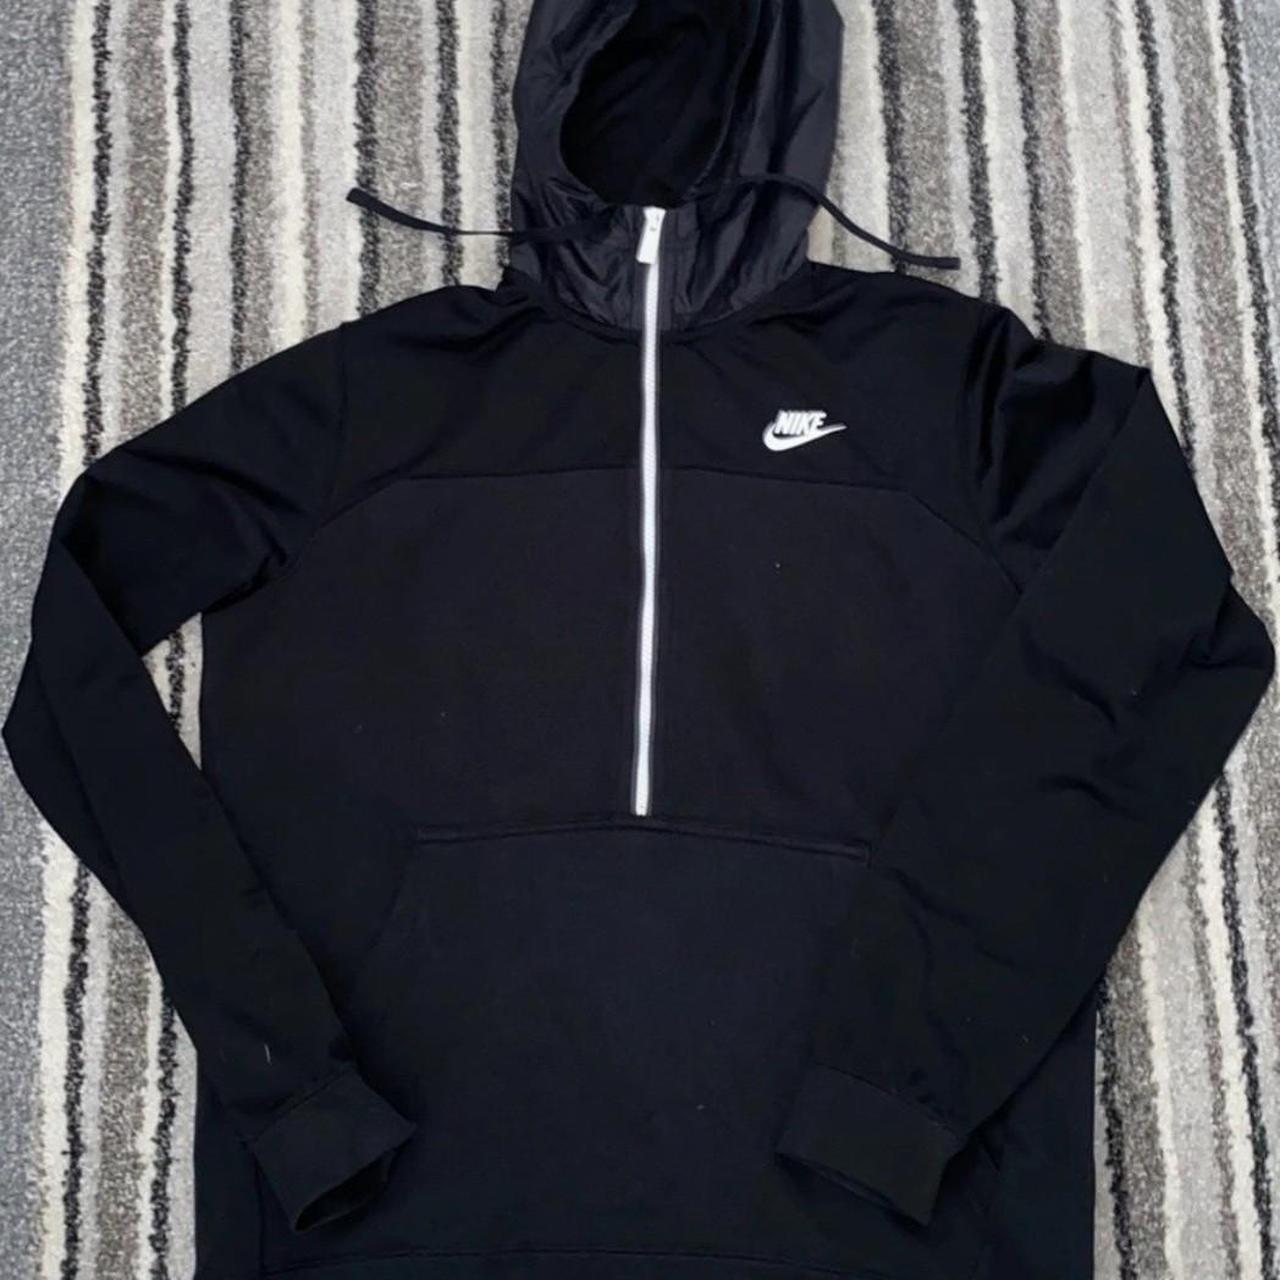 Nike Hybrid 1/4 Zip Hoodie in Black. Men's size... - Depop